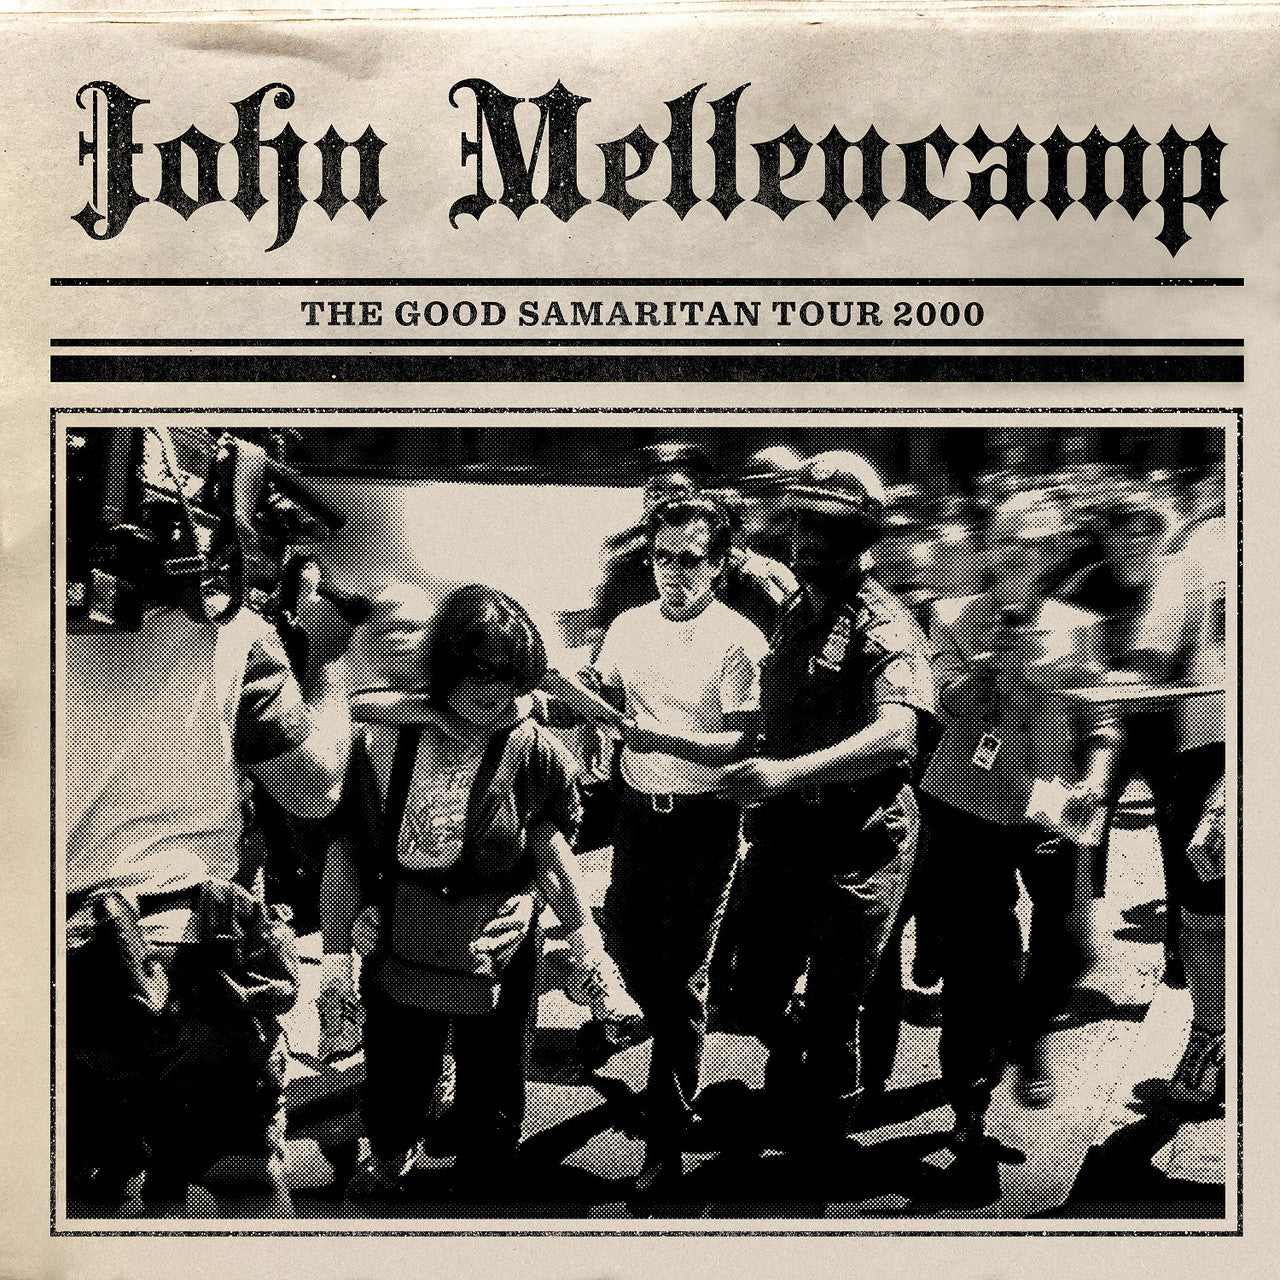 JOHN MELLENCAMP - THE GOOD SAMARITAN TOUR 2000 - LP DE VINILO